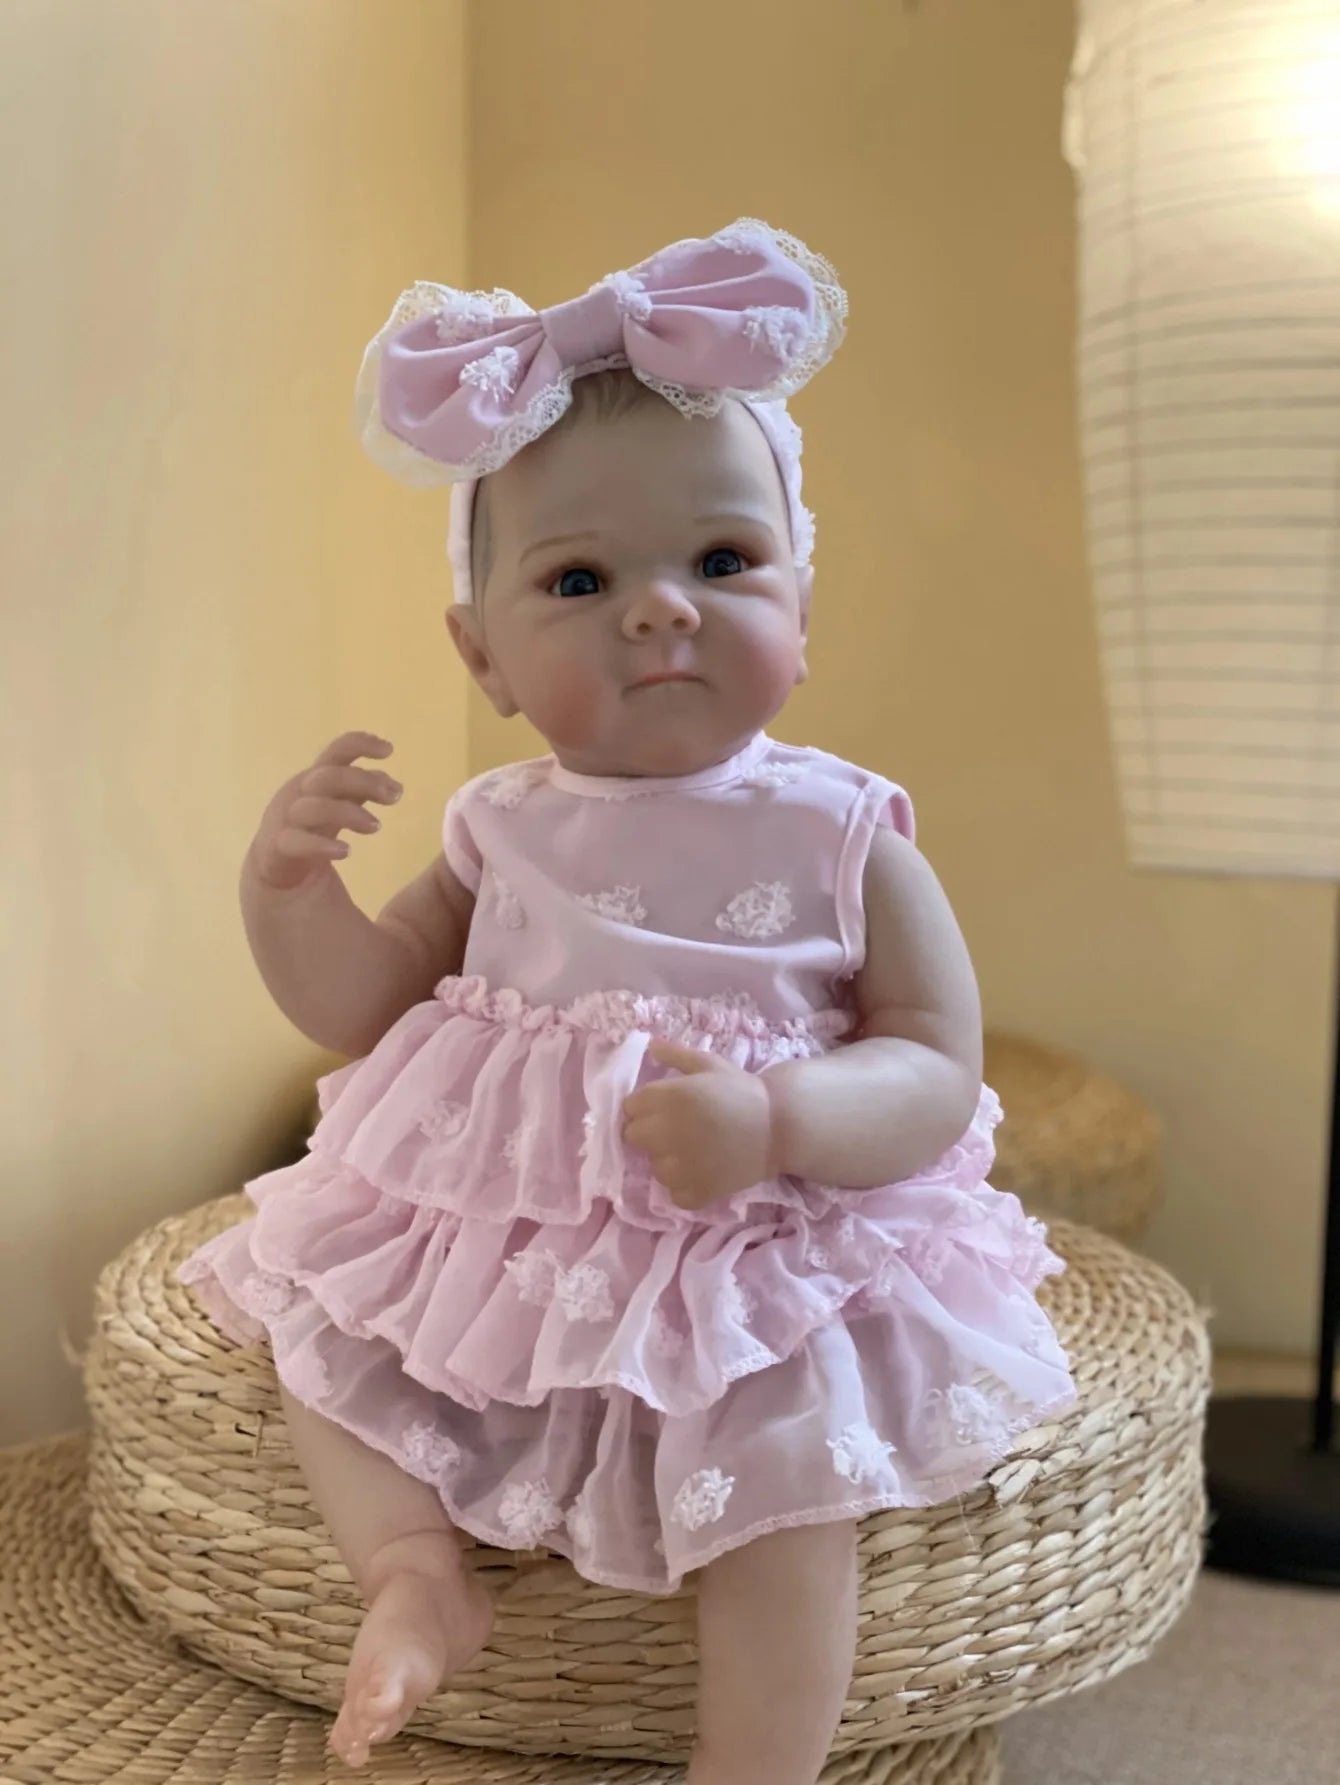 18" Bettie Bebe Reborn Doll - Lifelike Soft Vinyl Baby Toy for Girls' Gift